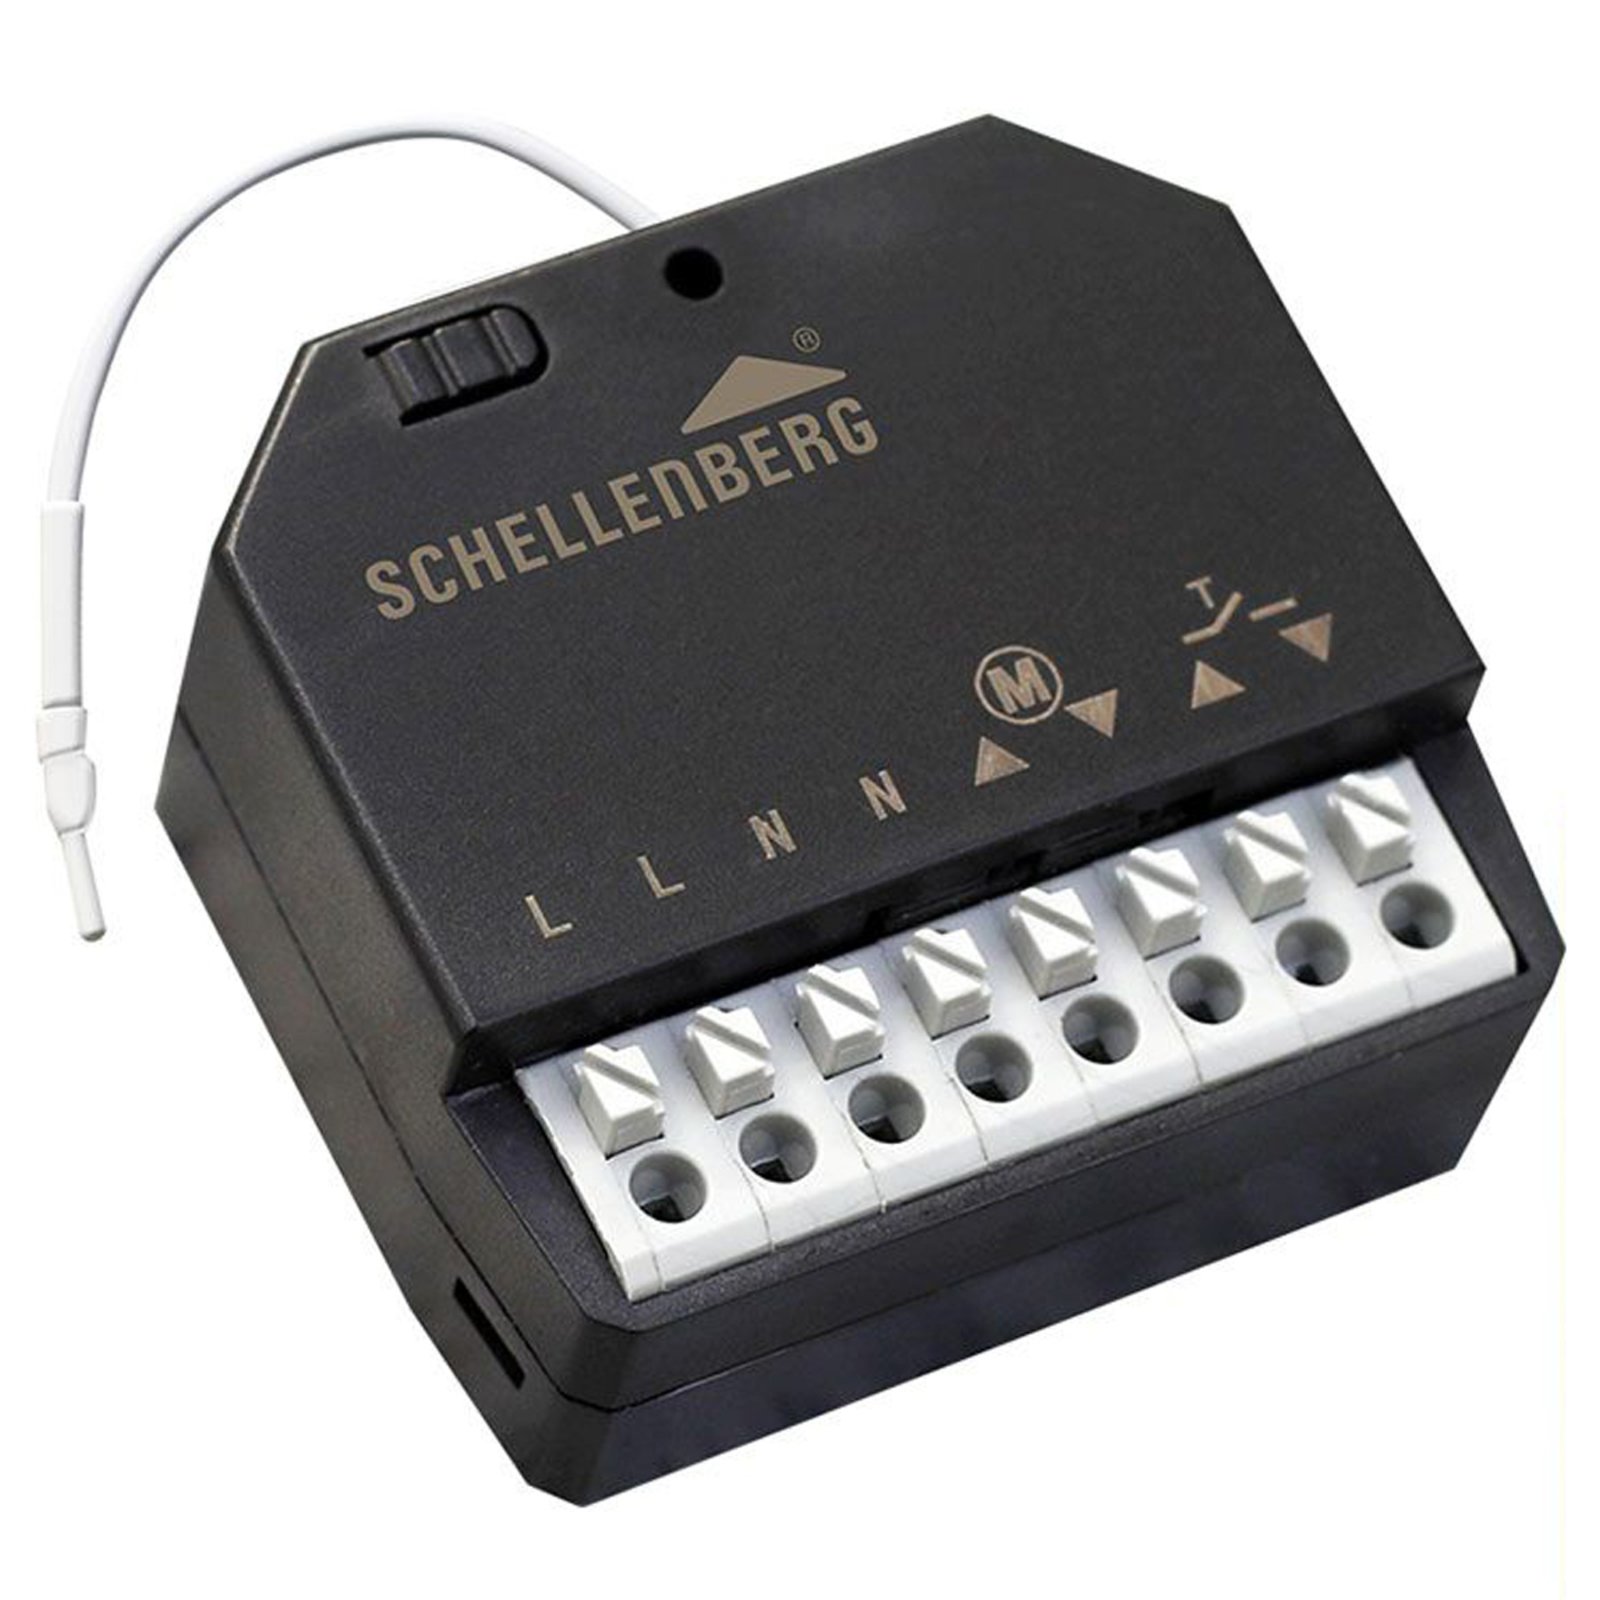 Schellenberg 20017 wireless receiver module